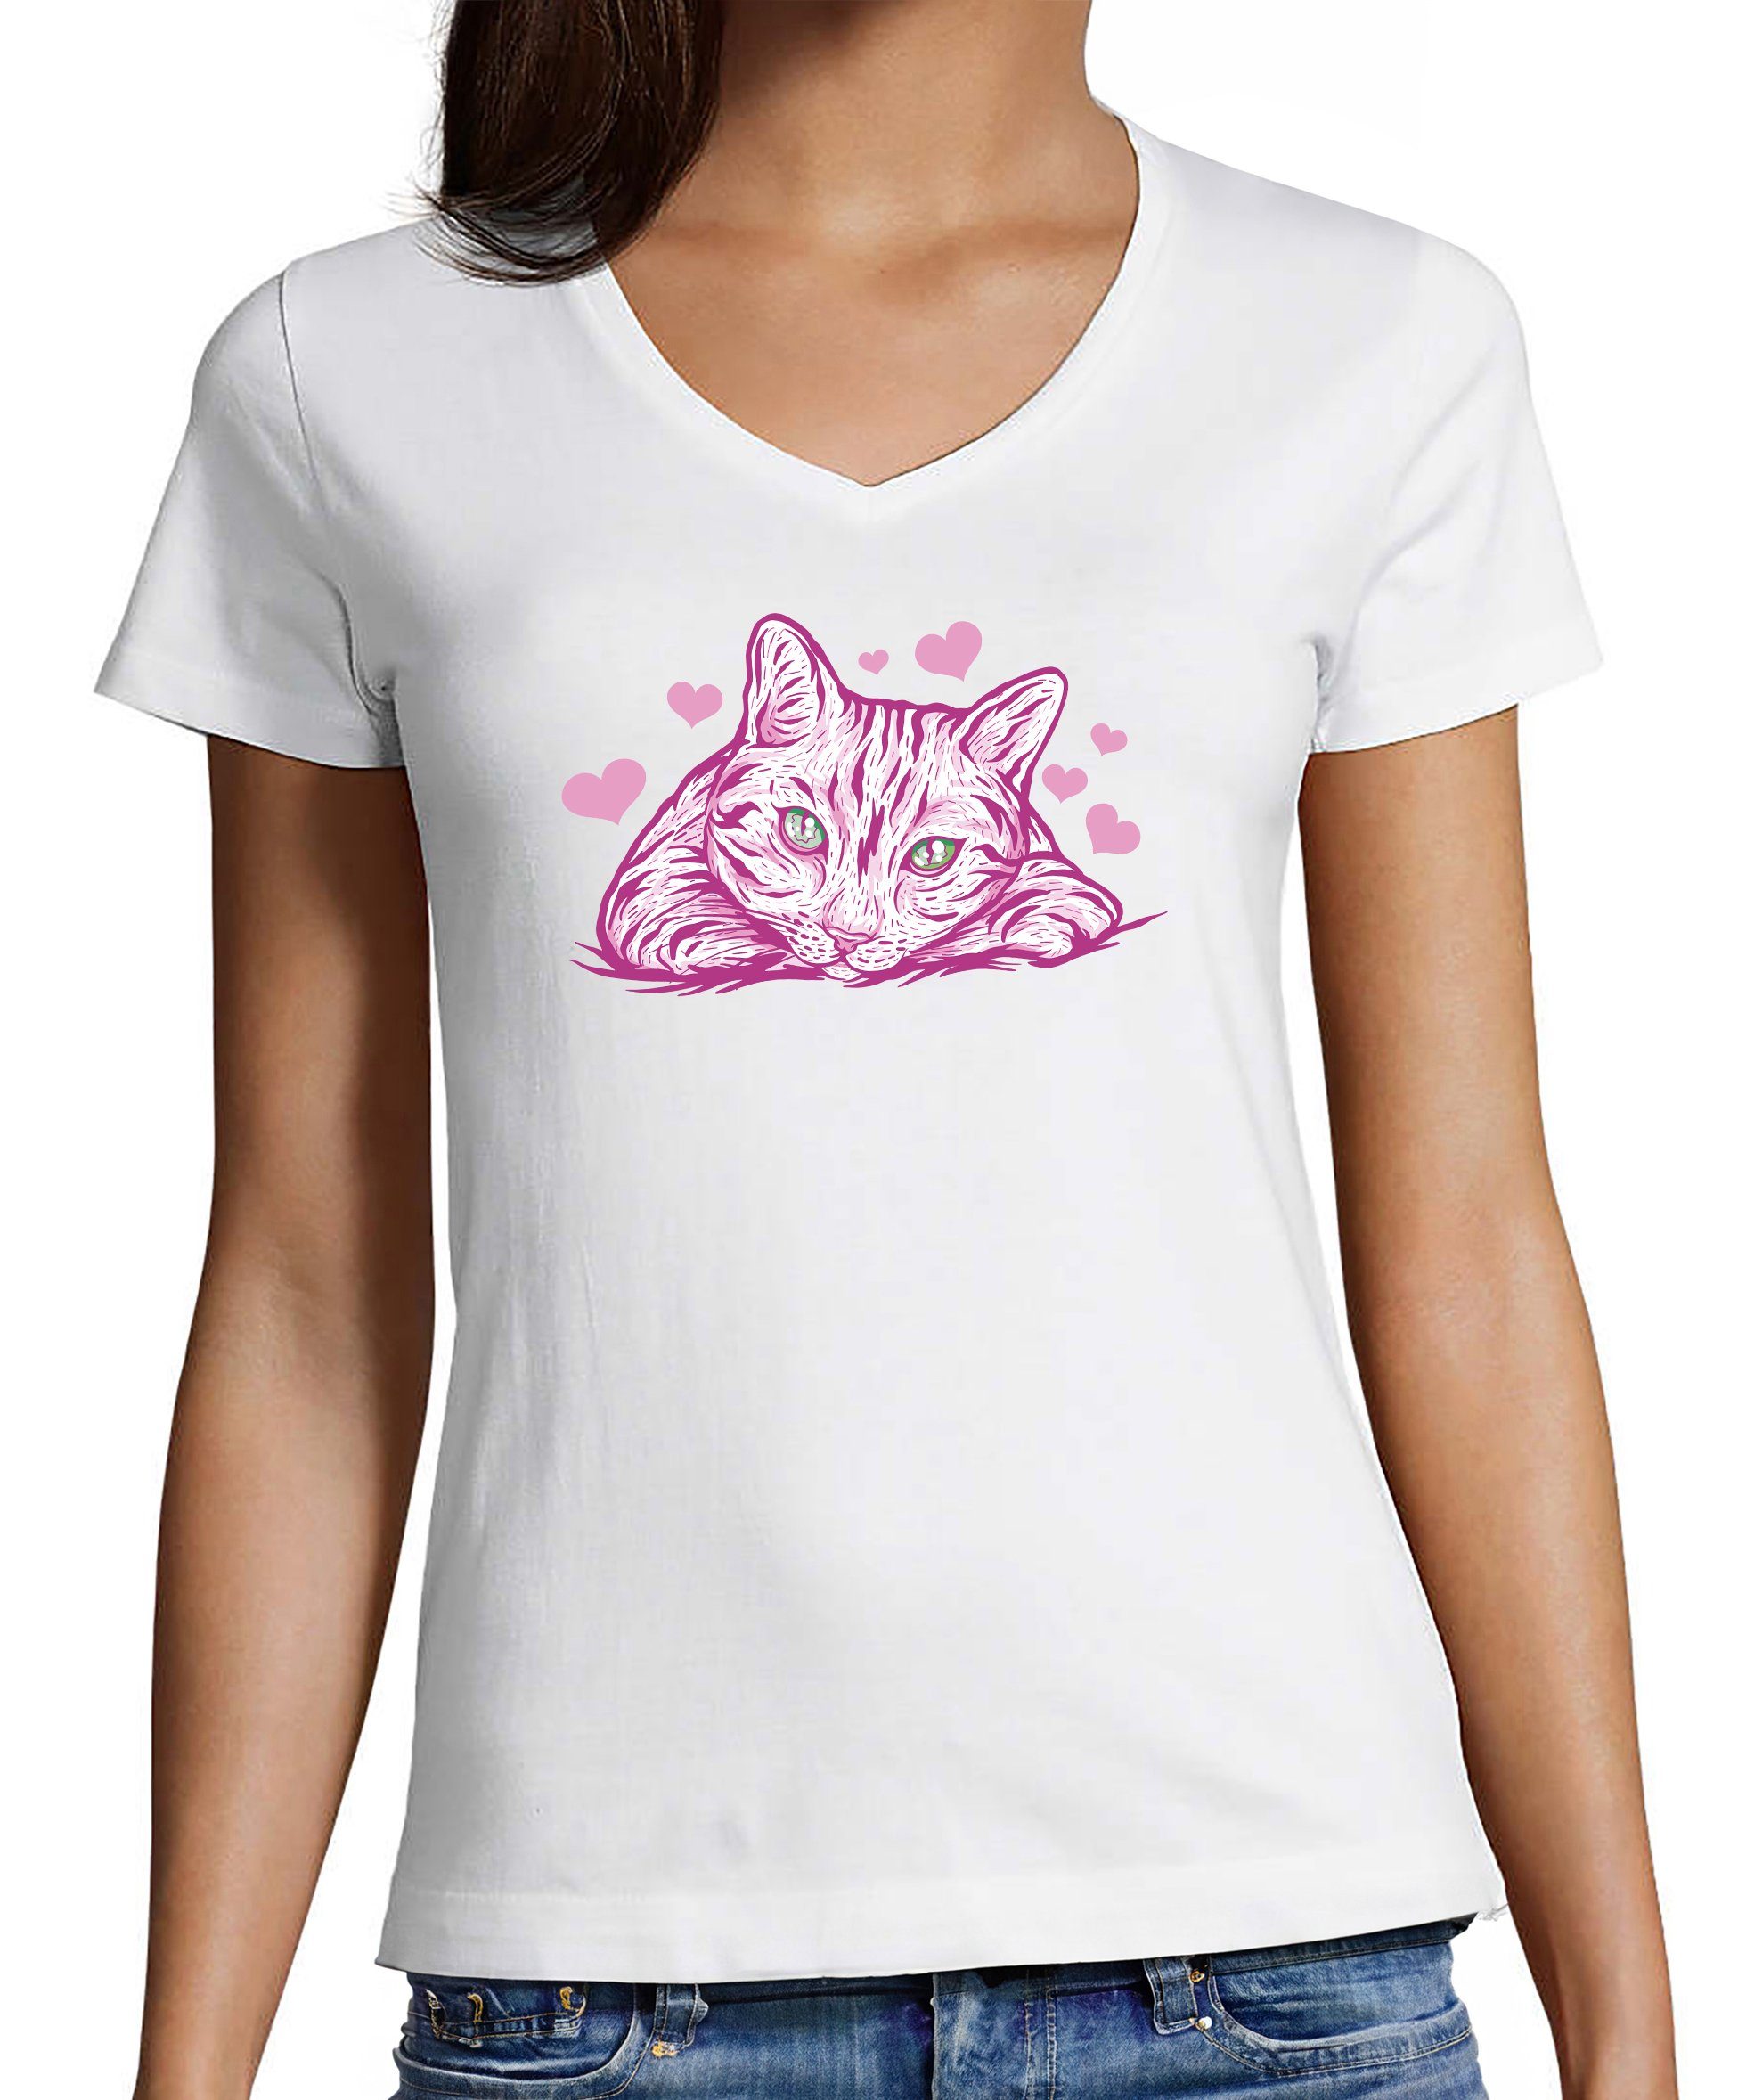 MyDesign24 T-Shirt Damen Katzen Print Shirt bedruckt - Pinke Katze mit Herzen Baumwollshirt mit Aufdruck, Slim Fit, i122 weiss